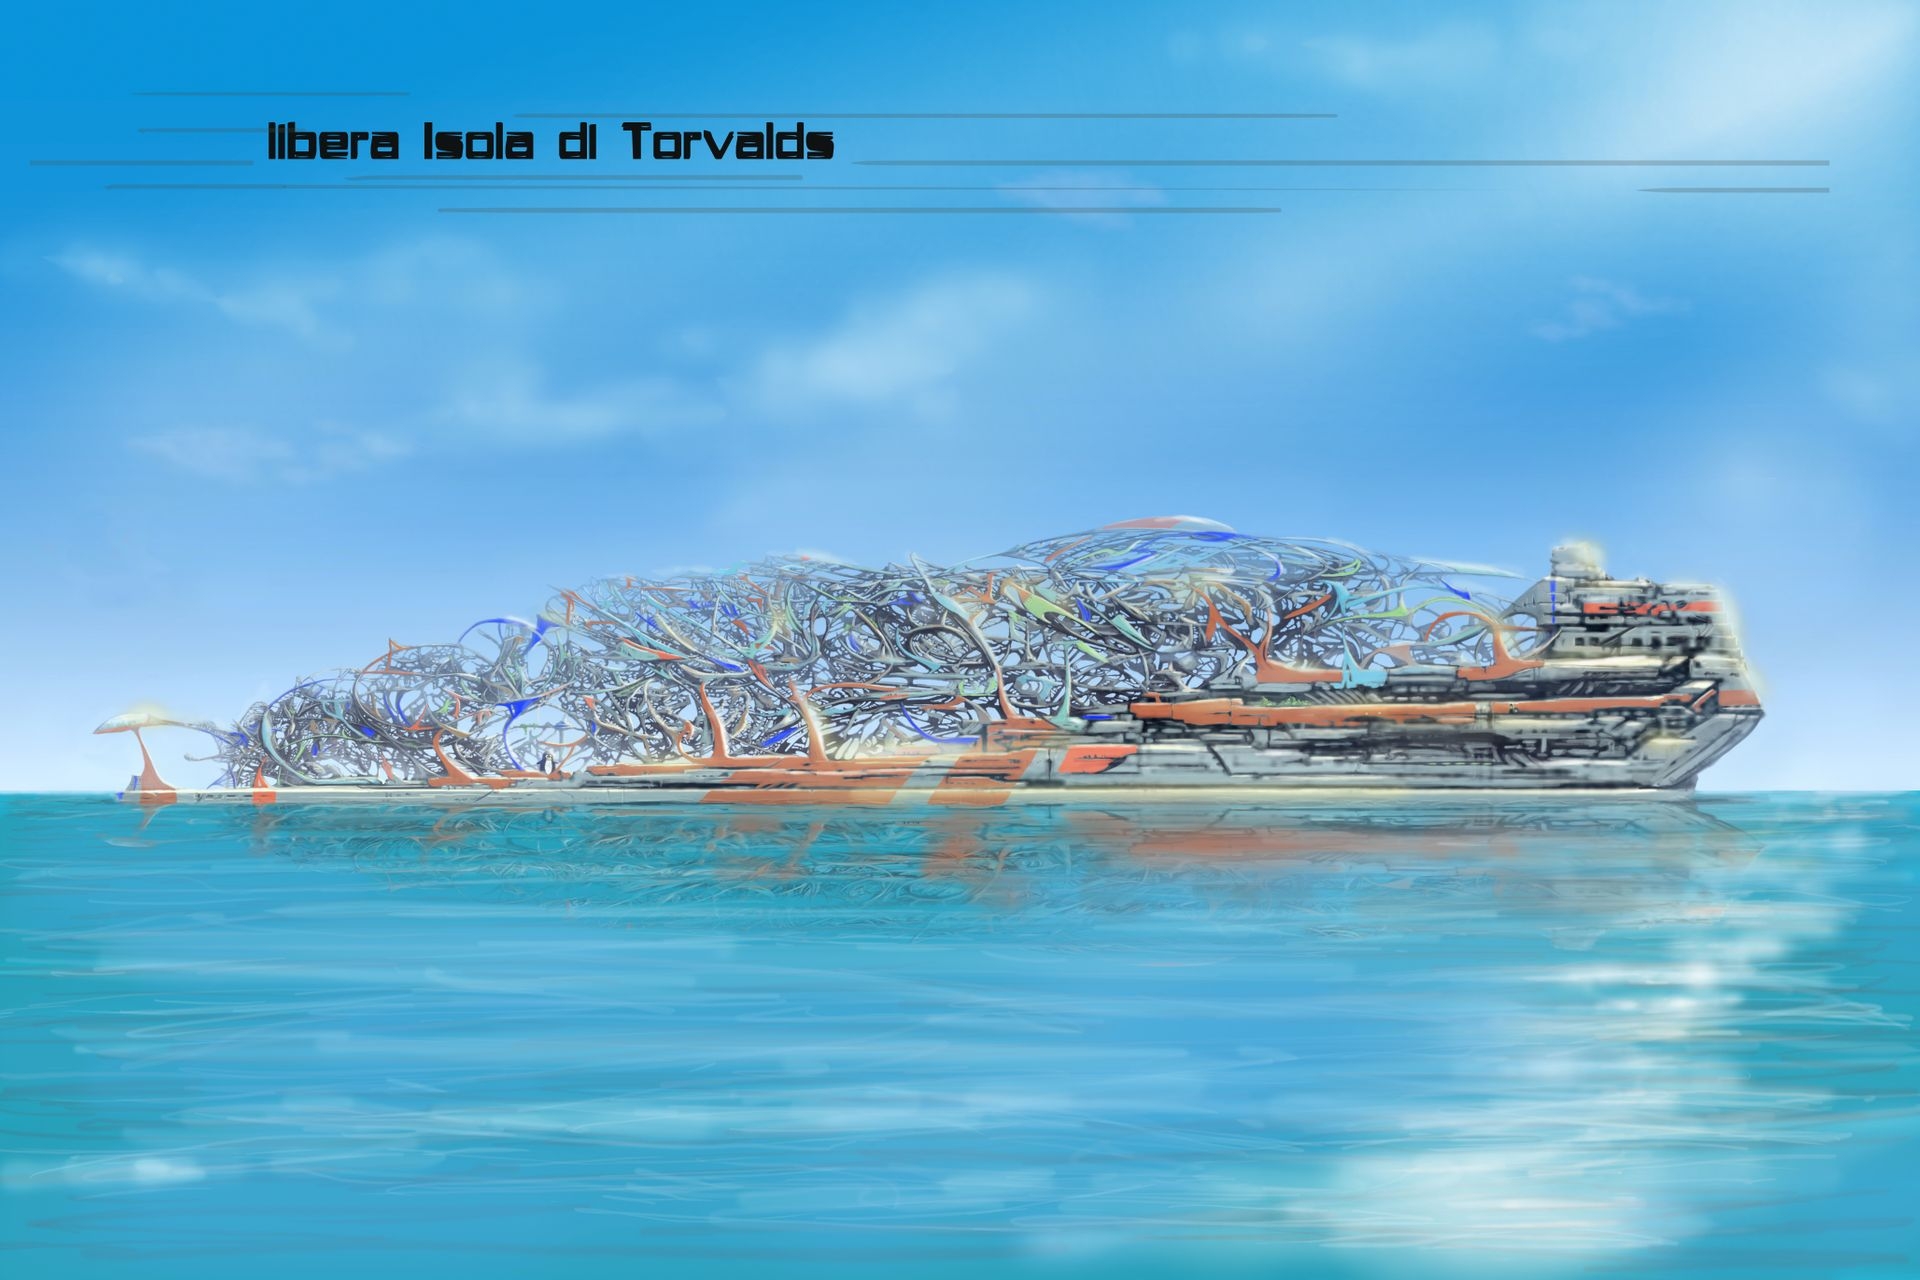 Инновационная литература: иллюстрация свободного острова Торвальдс в «Проекте Монтекристо - Первая колония» Эдоардо Вольпи Келлермана.